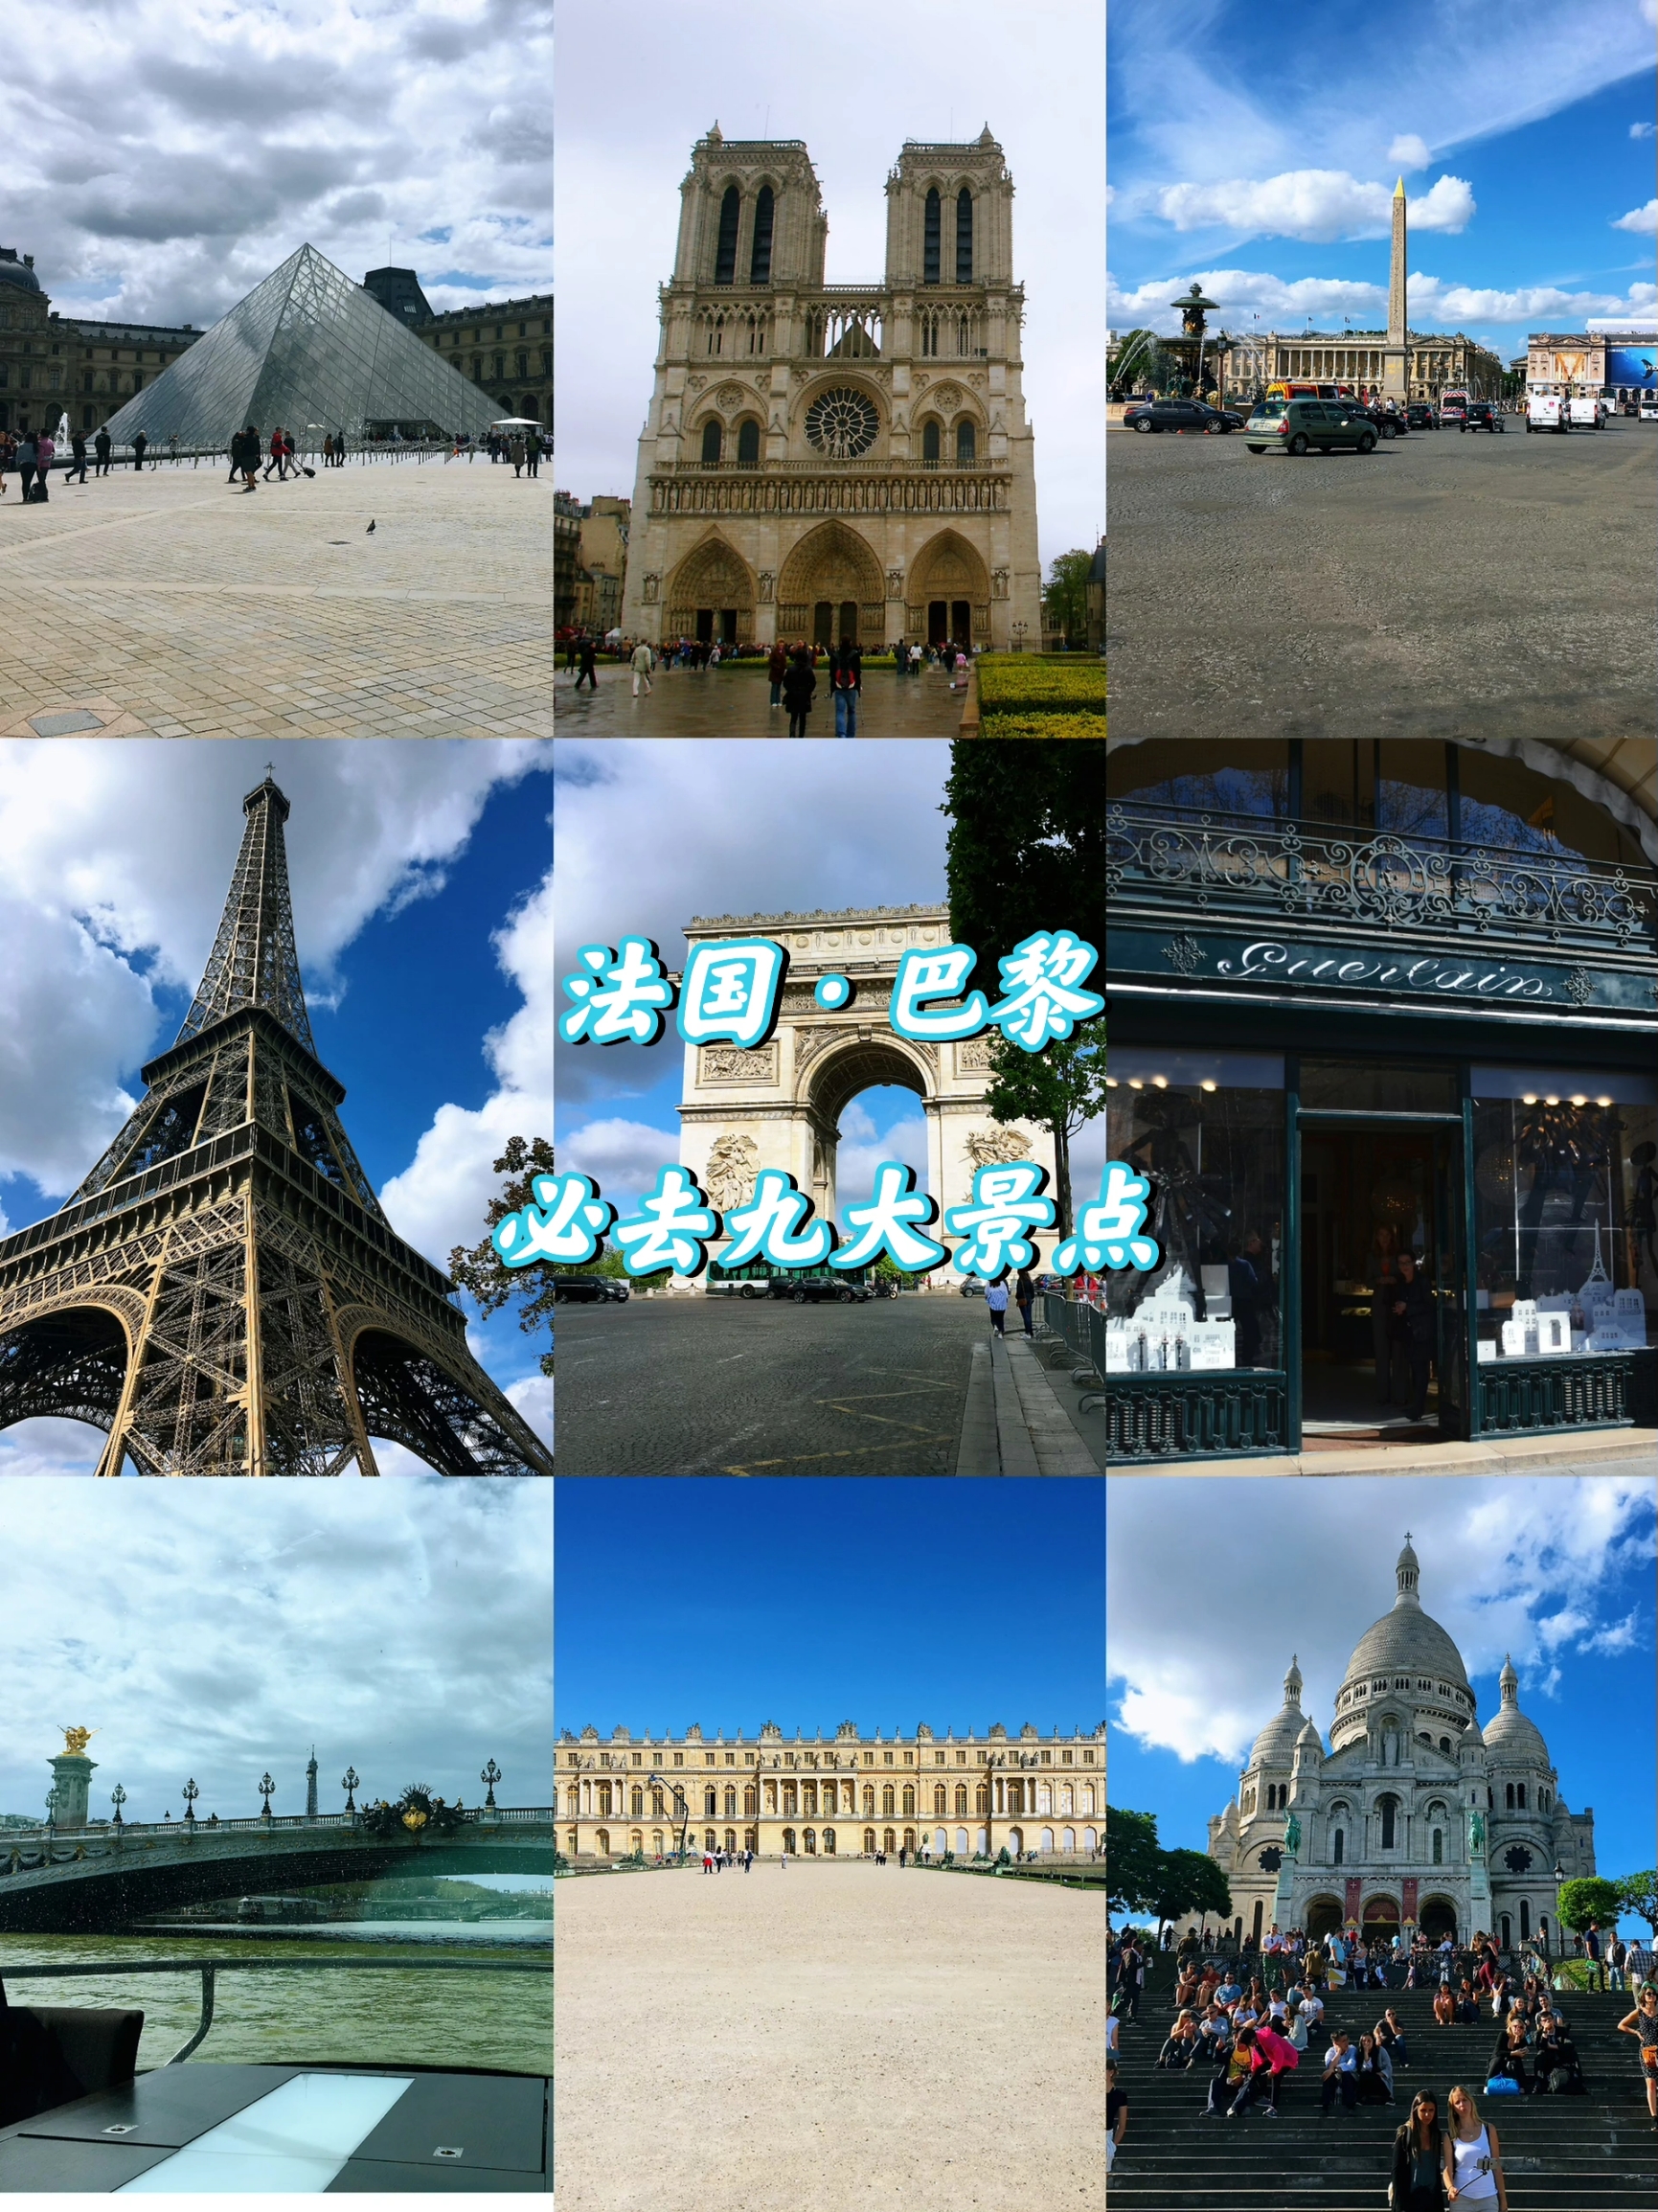 🇫🇷巴黎旅游攻略丨写给第1次去巴黎的你 🔖行程：巴黎市区一日游 🎬必打卡景点 1⃣卢浮宫：世界三大博